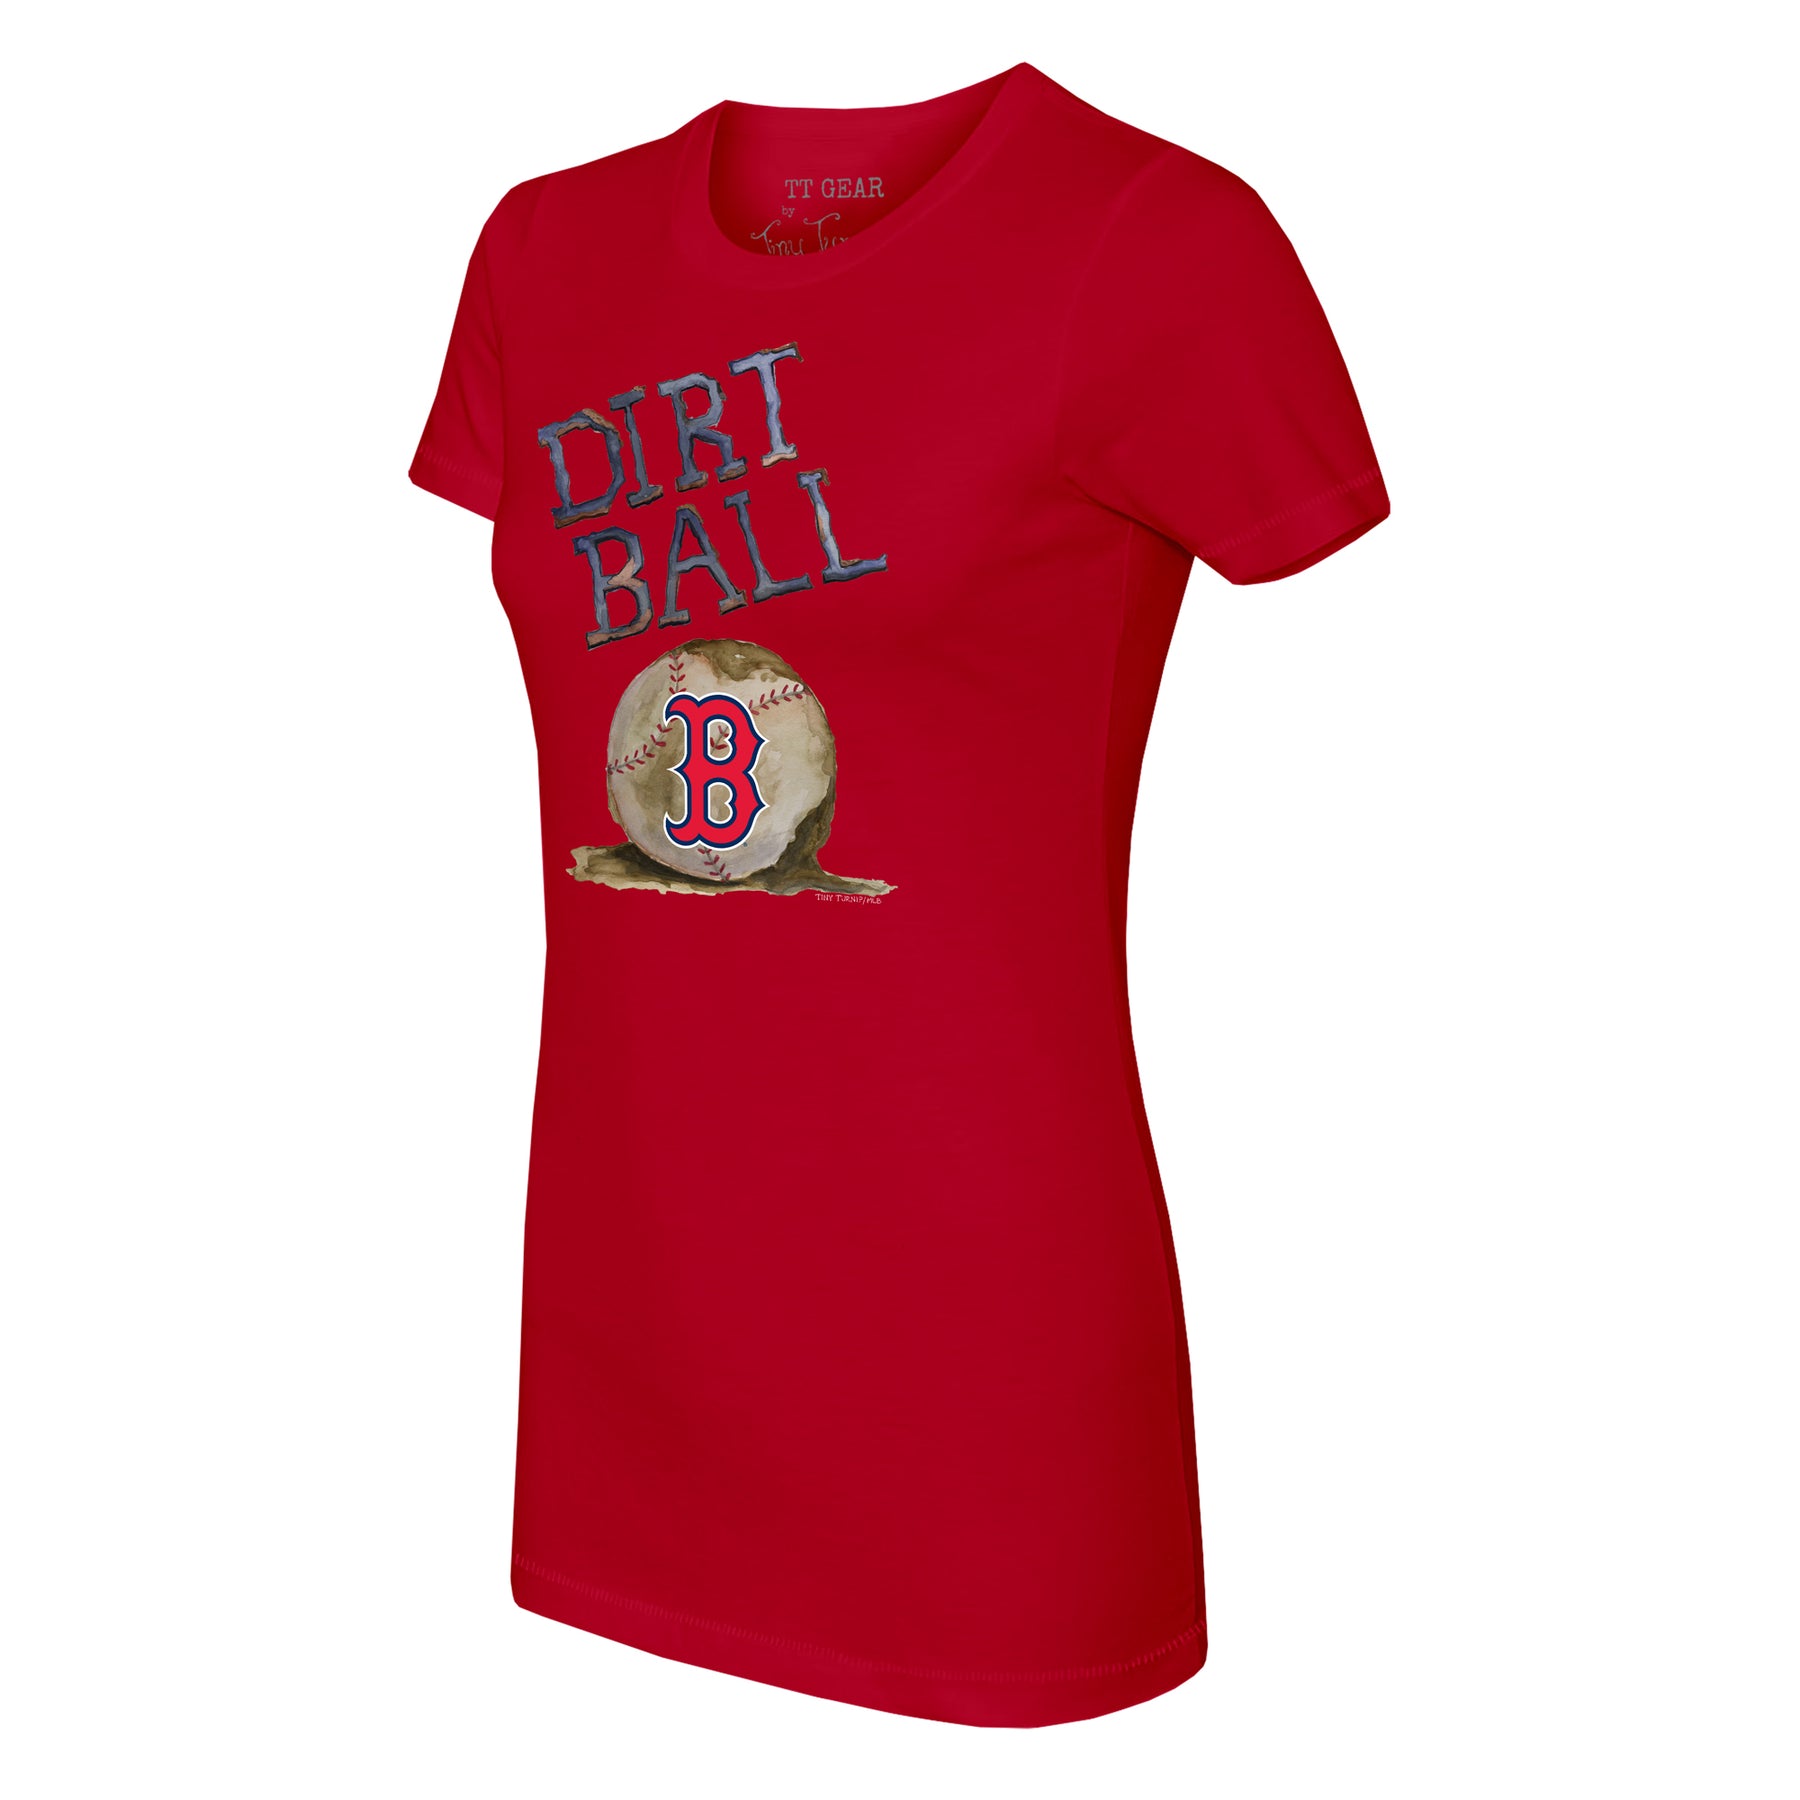 Tiny Turnip Boston Red Sox TT Rex Tee Shirt Women's XS / White